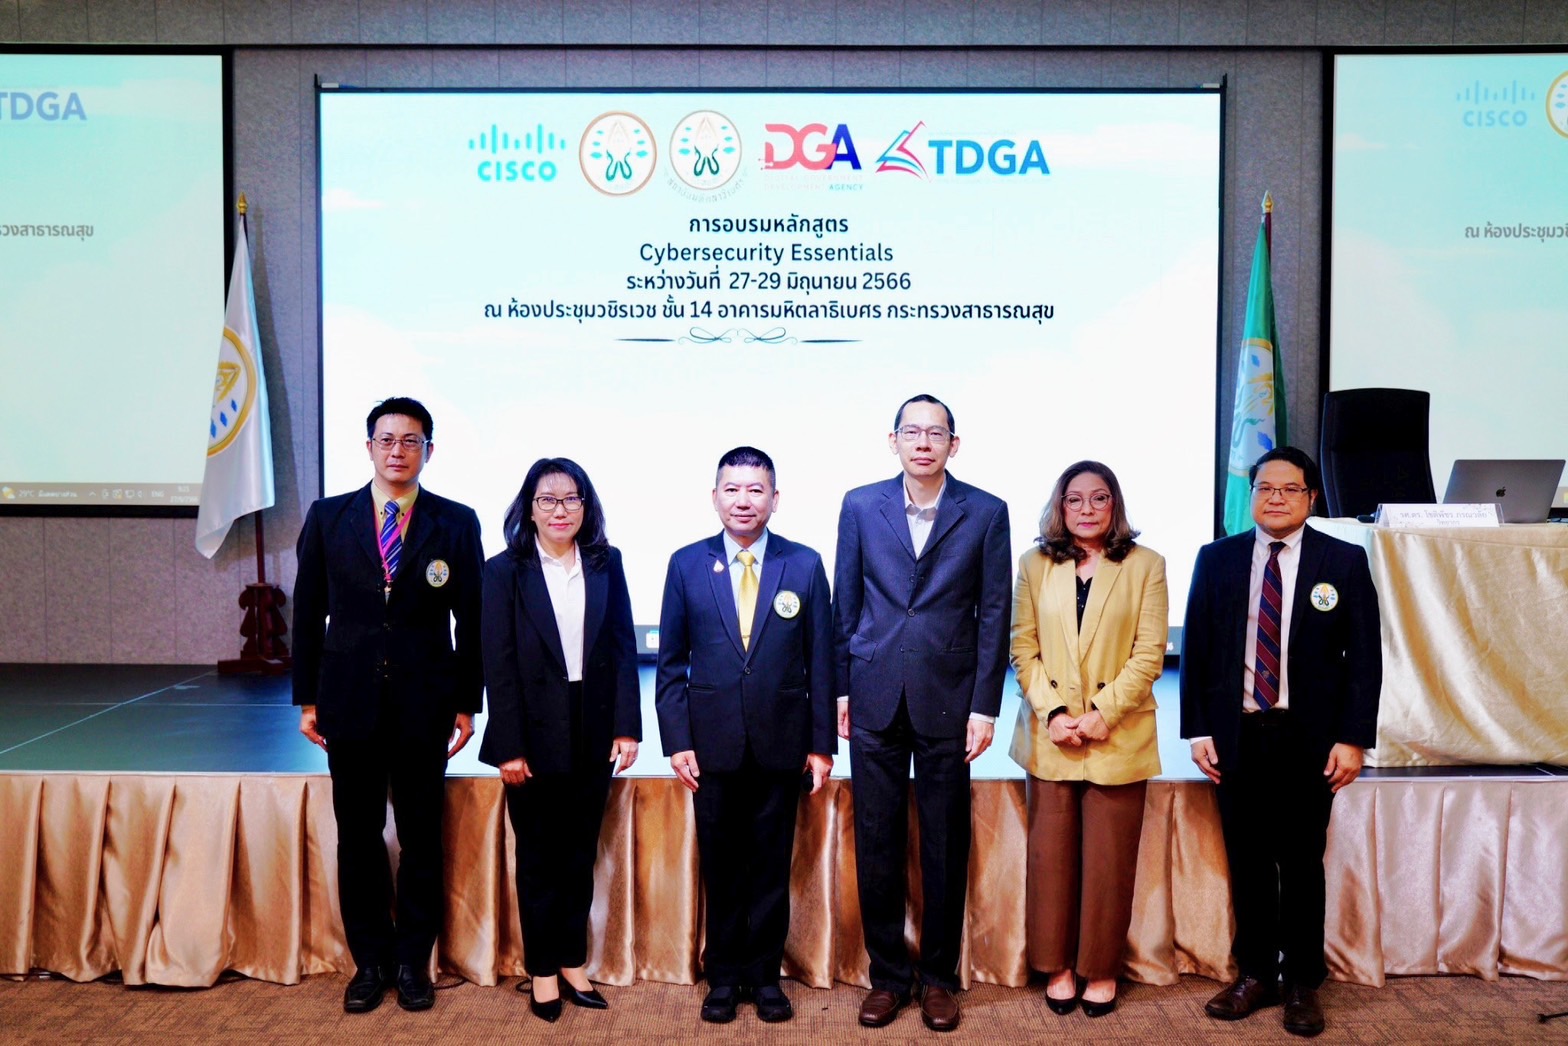 เดินหน้าพัฒนาทักษะด้านดิจิทัลสำหรับบุคลากรทางการแพทย์ในหลักสูตร Cybersecurity Essentials โดยสถาบันพัฒนาบุคลากรภาครัฐด้านดิจิทัล (TDGA by DGA) ร่วมกับกับแพทยสภา และบริษัท ซิสโก้ซีสเต็มส์ (ประเทศไทย)